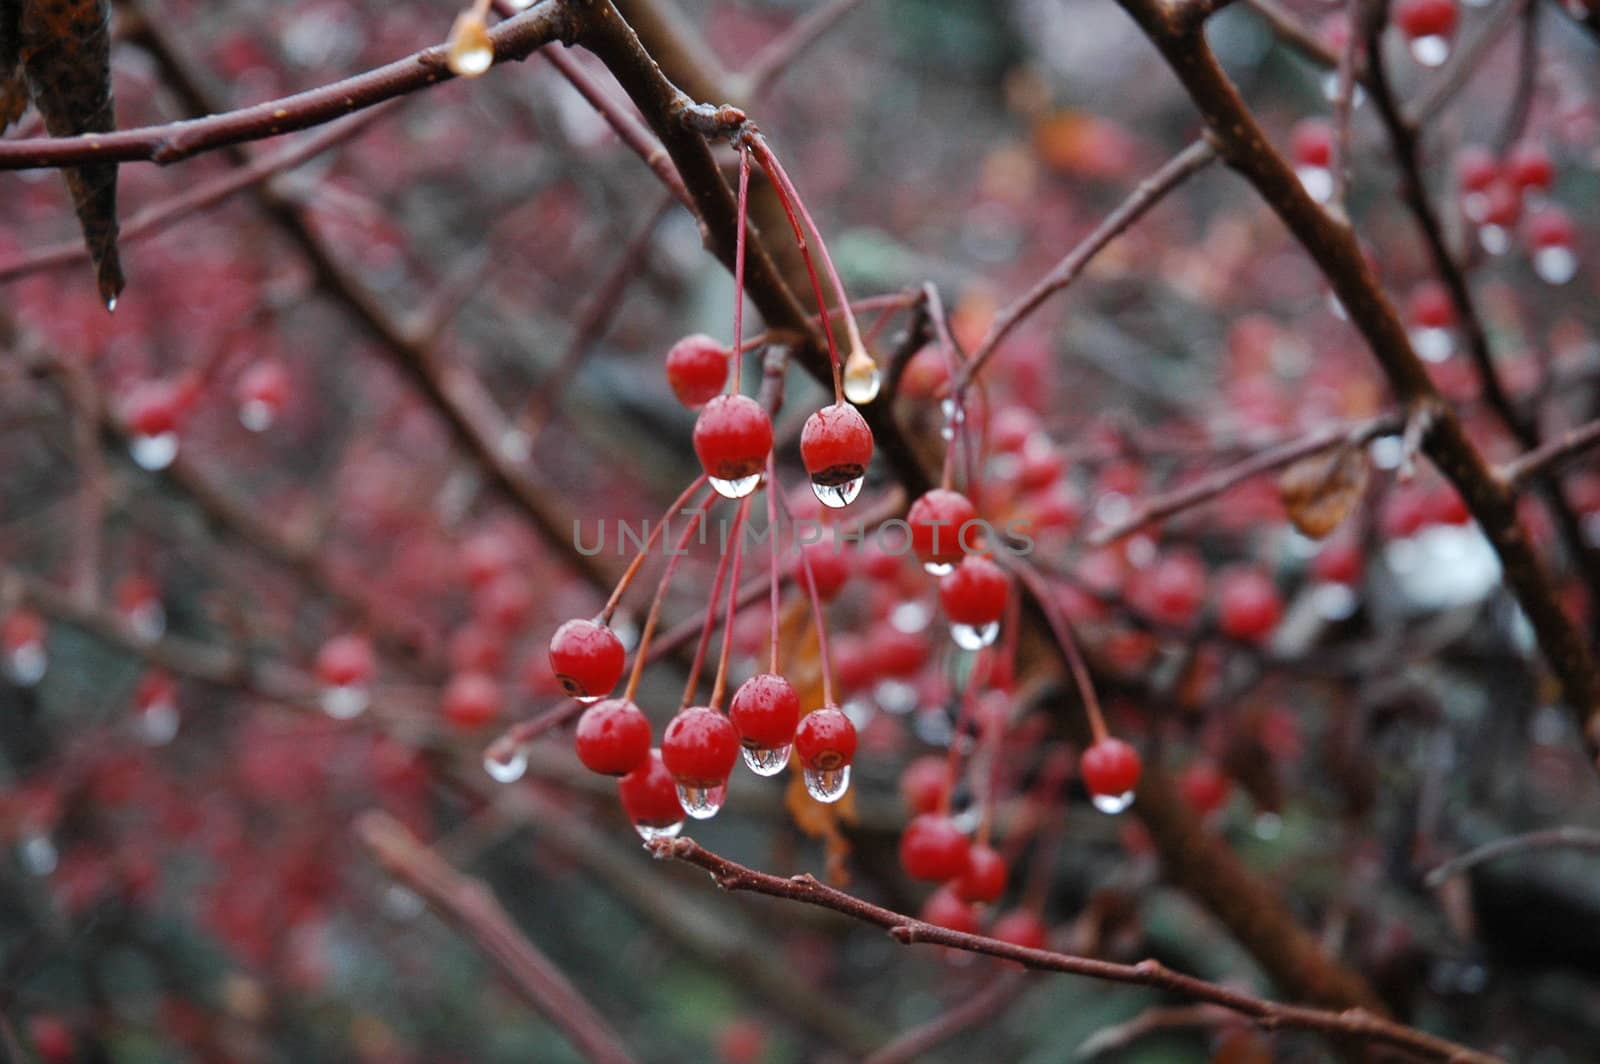 Rain-dripping red berries by sundaune